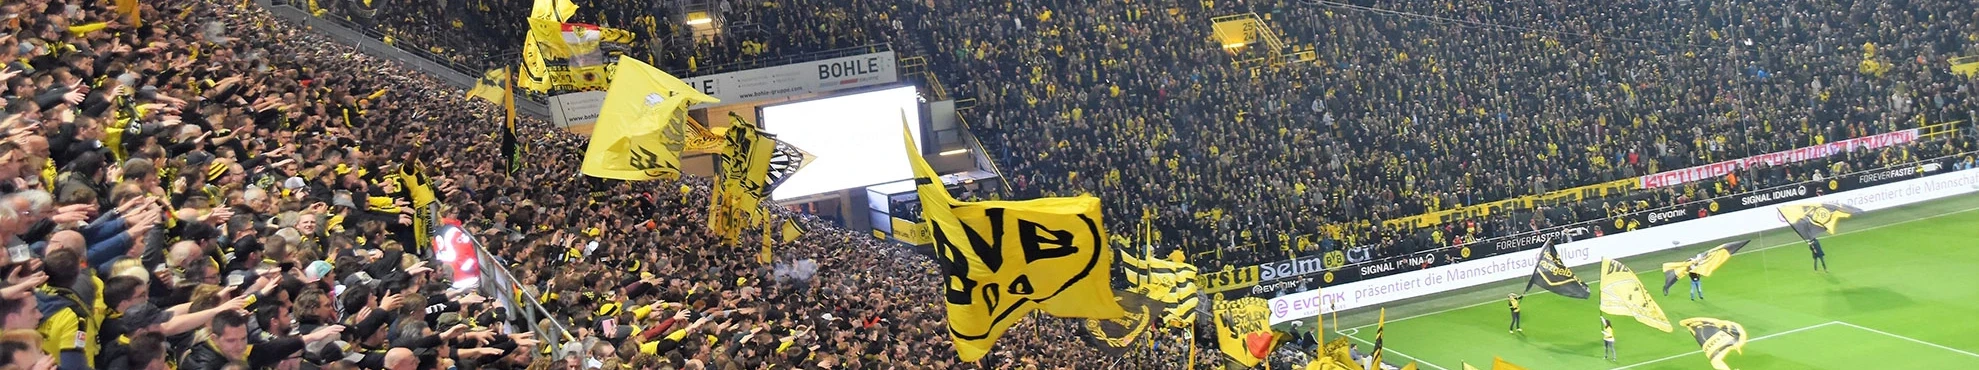 Voetbalreizen Borussia Dortmund